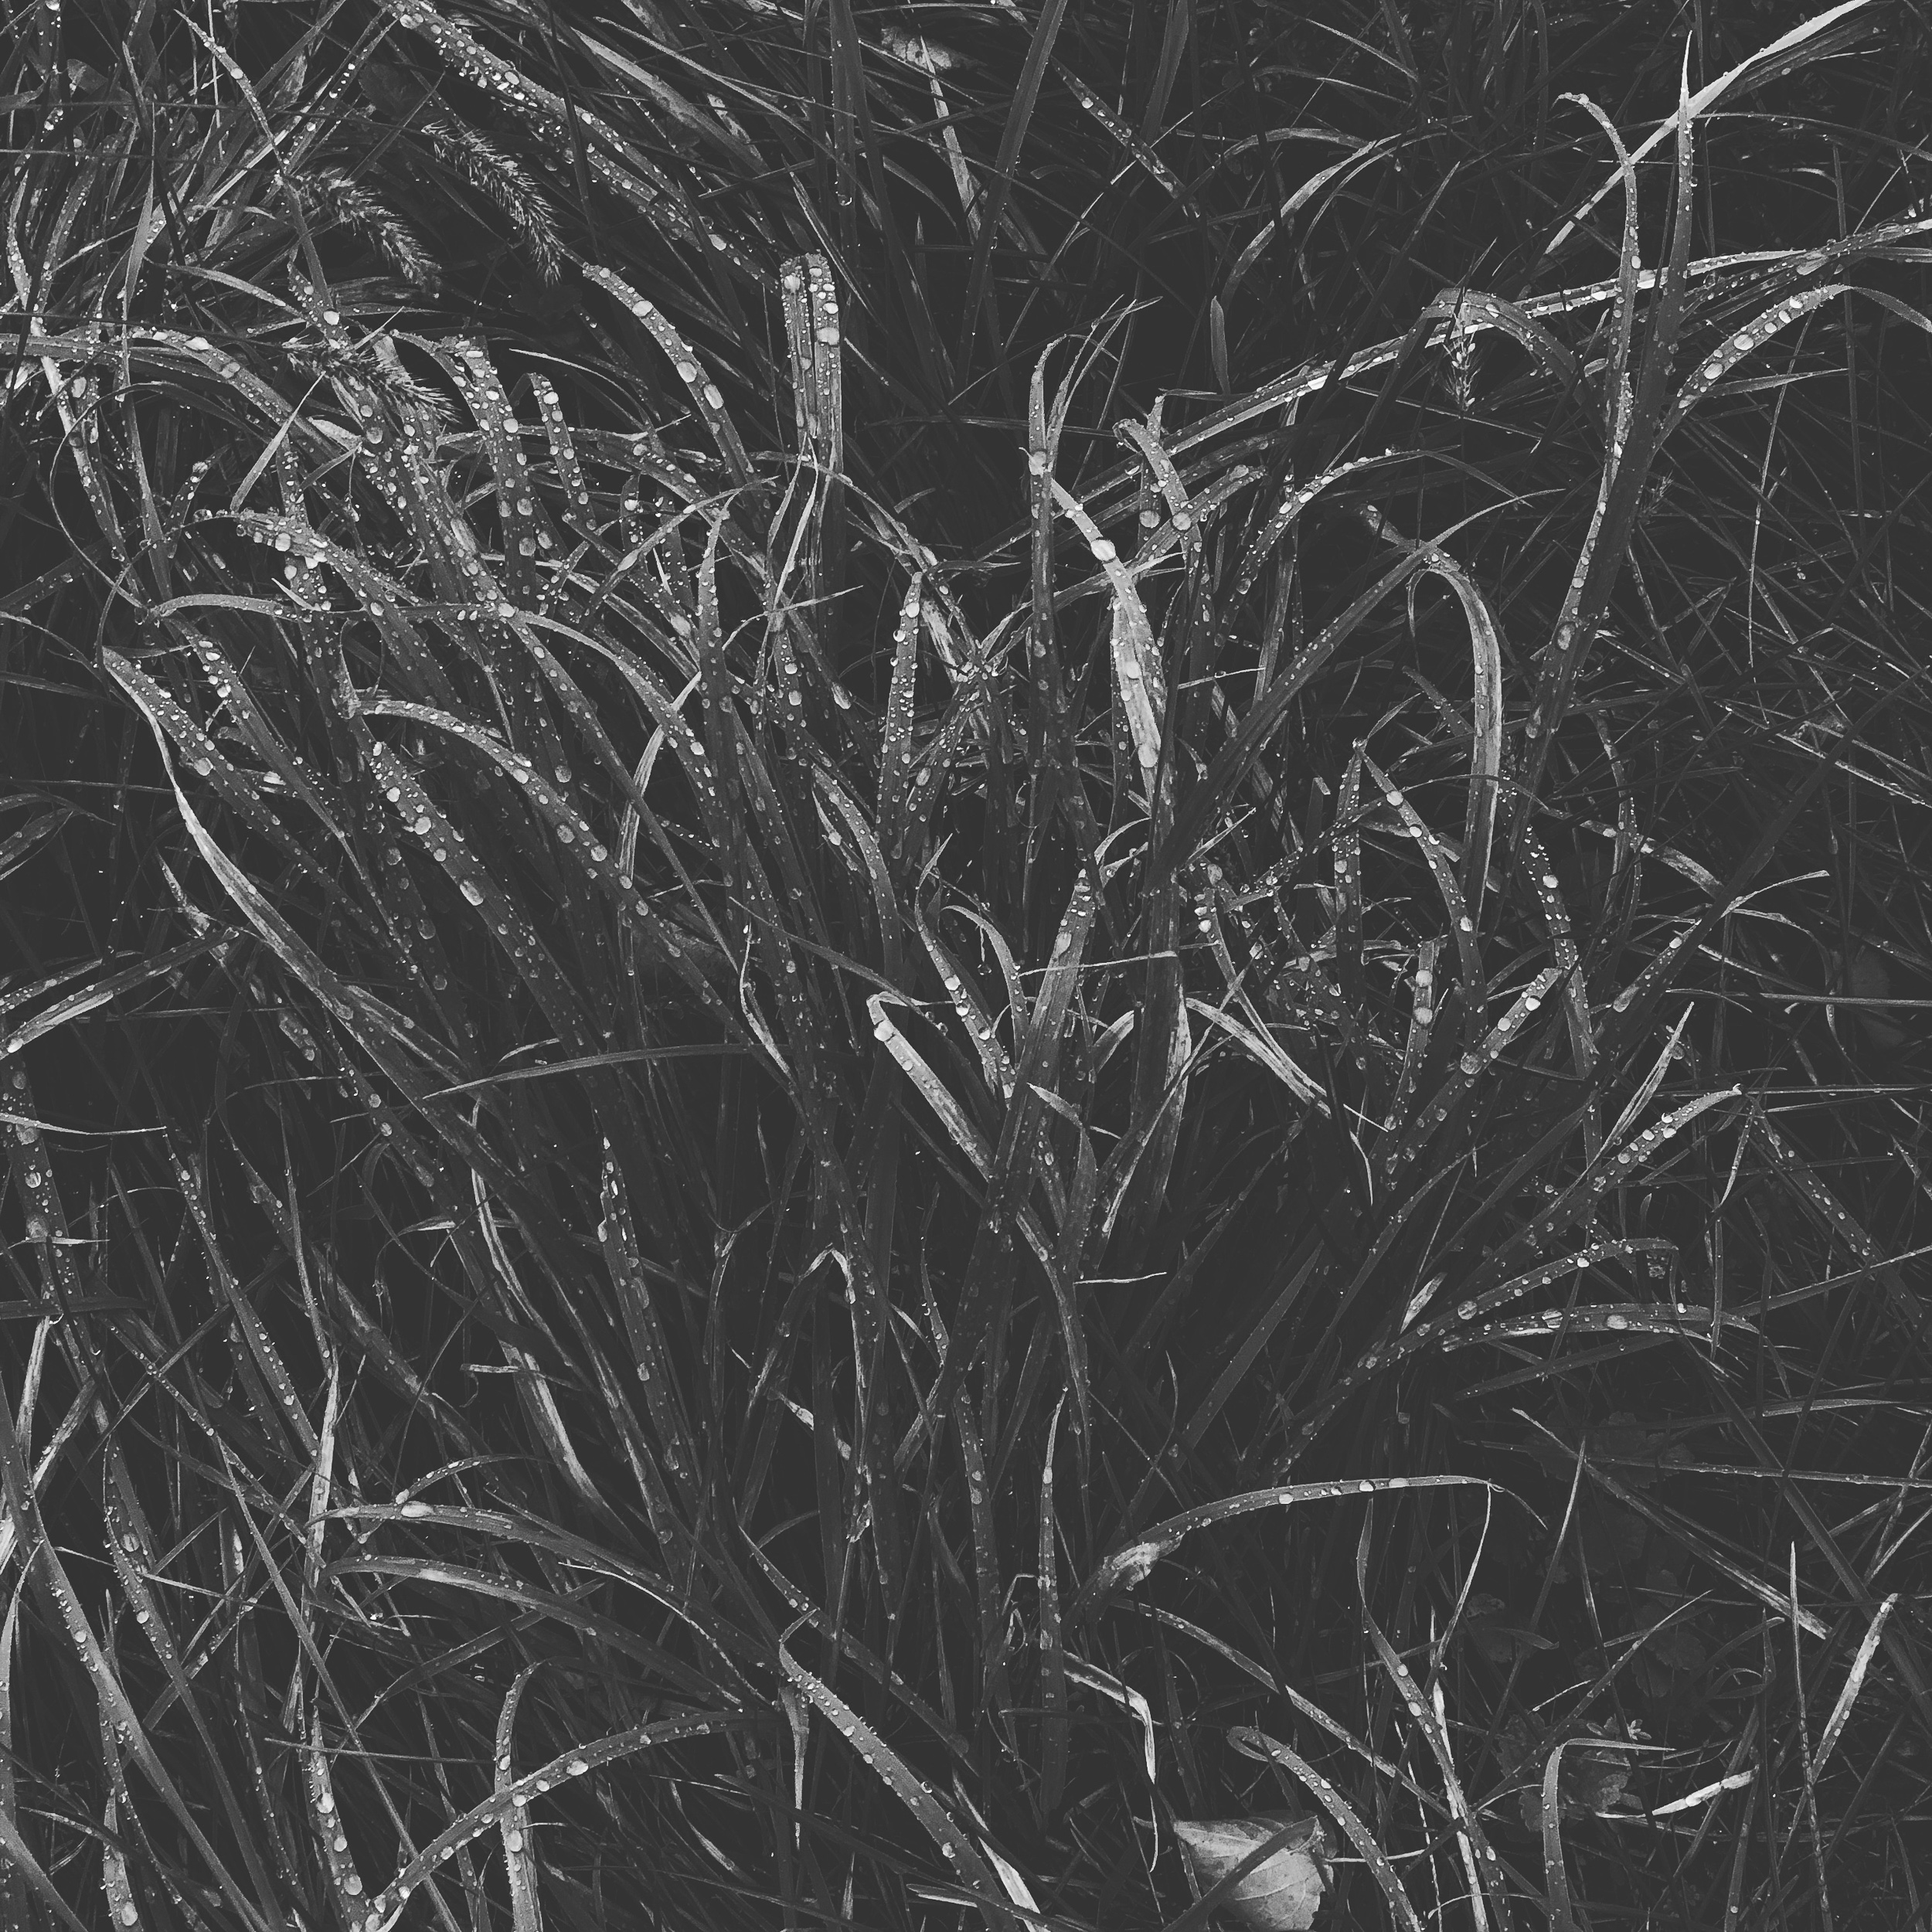 Silver wet grass